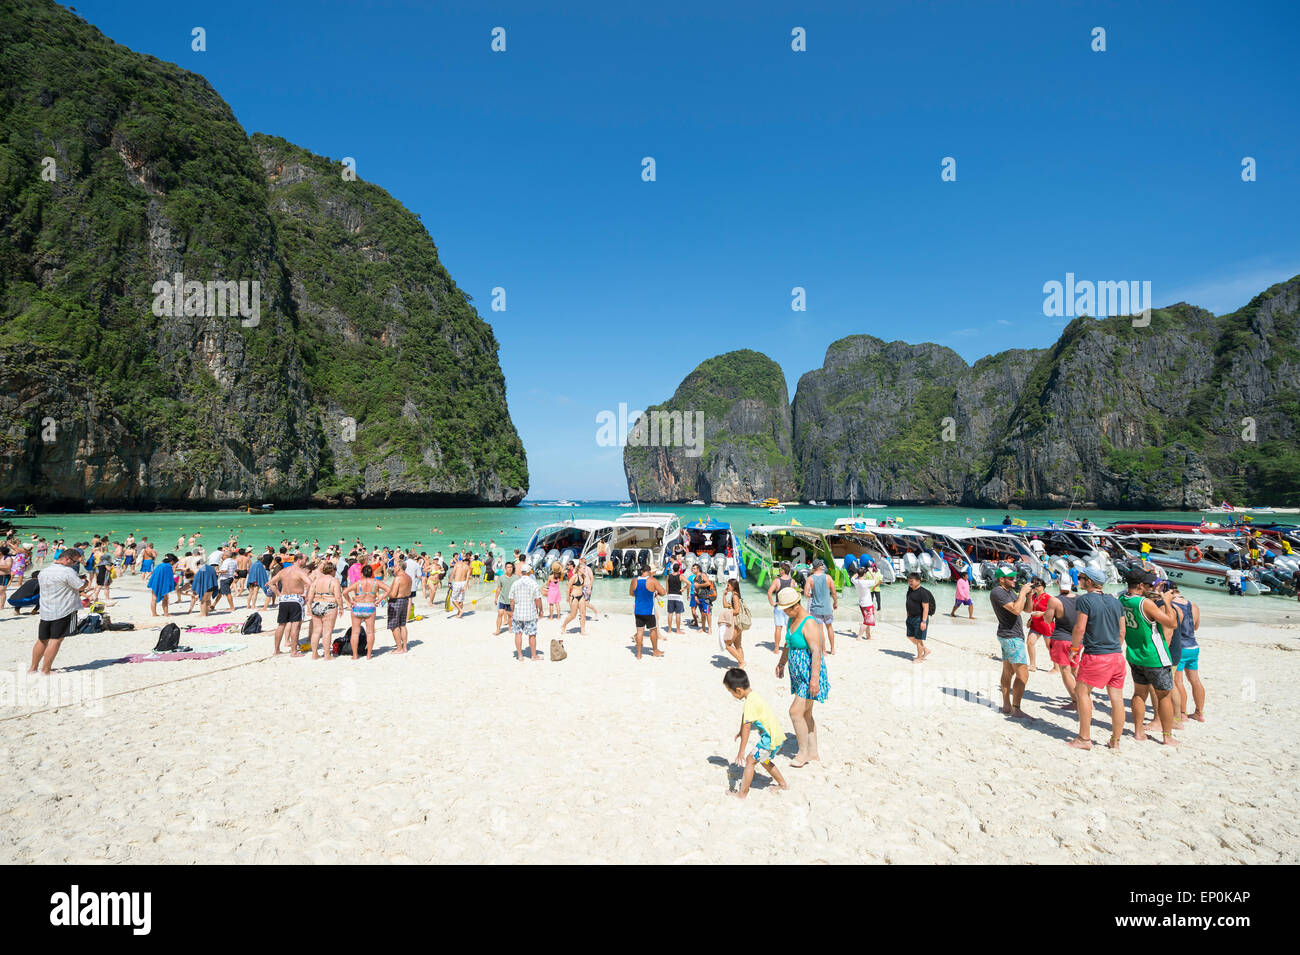 MAYA BAY, THAILAND - NOVEMBER 12, 2014: Crowds of sunbathing visitors enjoy a day trip at the iconic beach of Maya Bay. Stock Photo